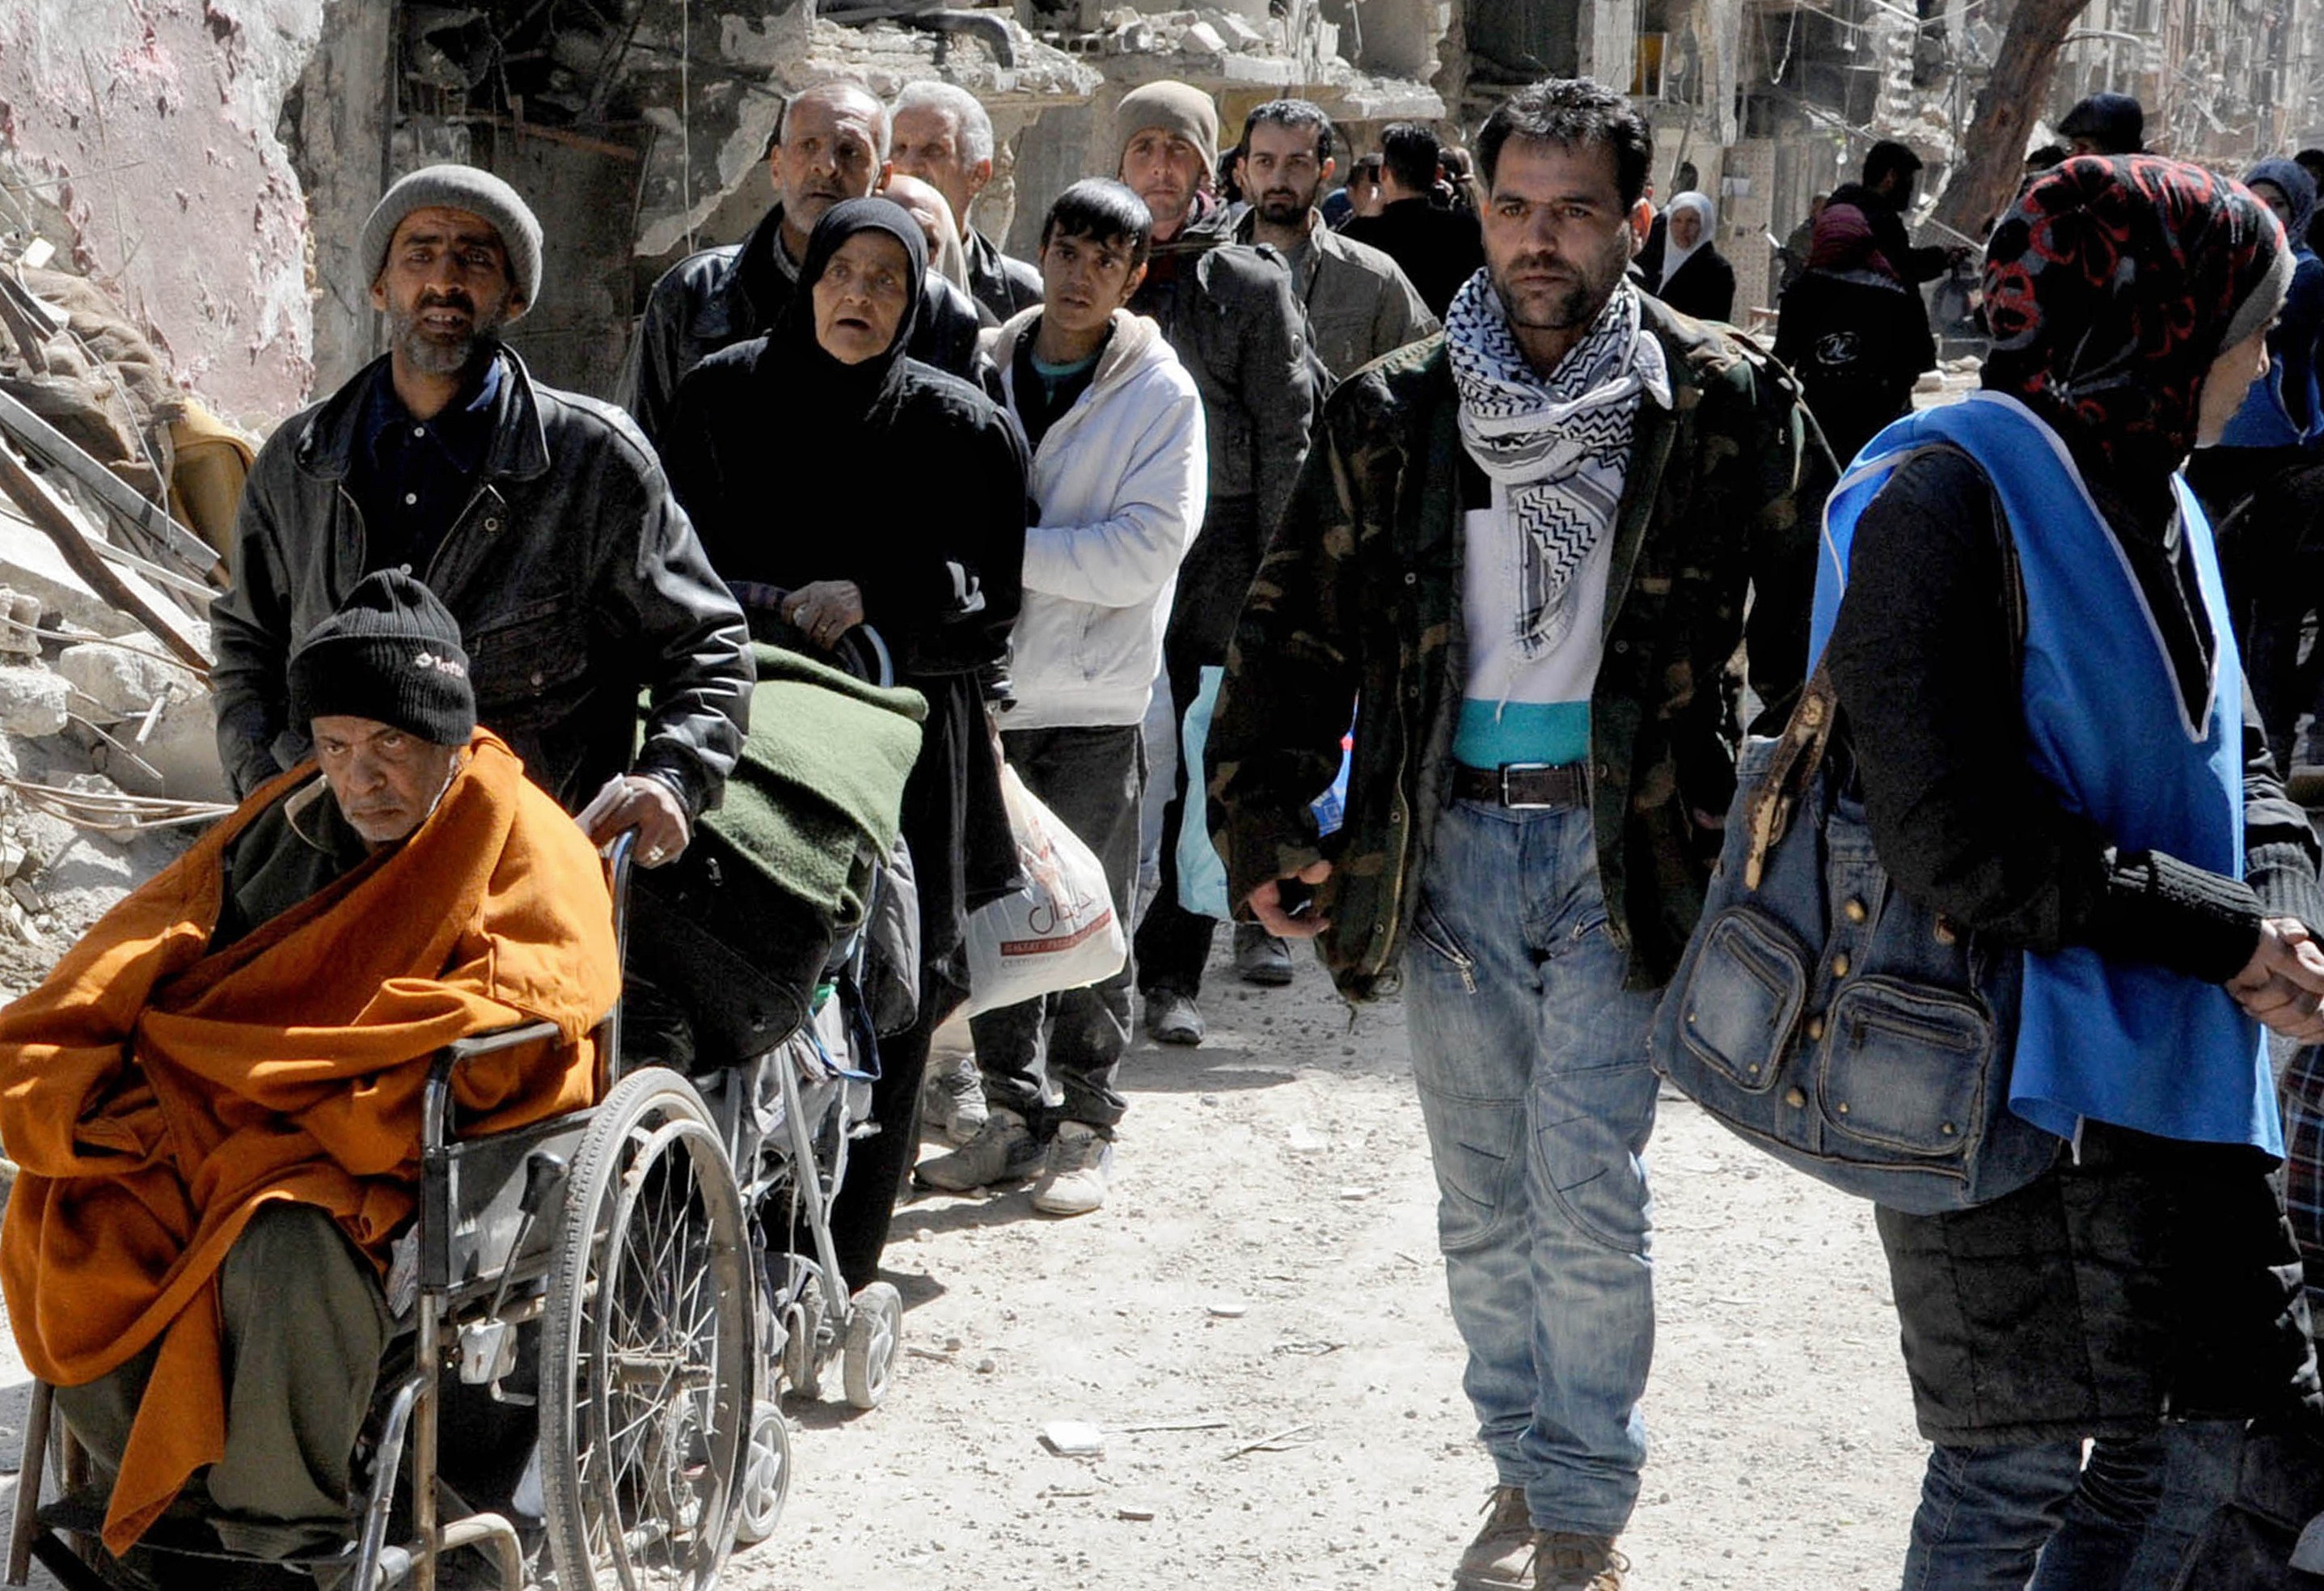 Poza care arata dimensiunea crizei umanitare din Siria. Coada nesfarsita pentru mancare intr-o tabara de refugiati din Damasc - Imaginea 3